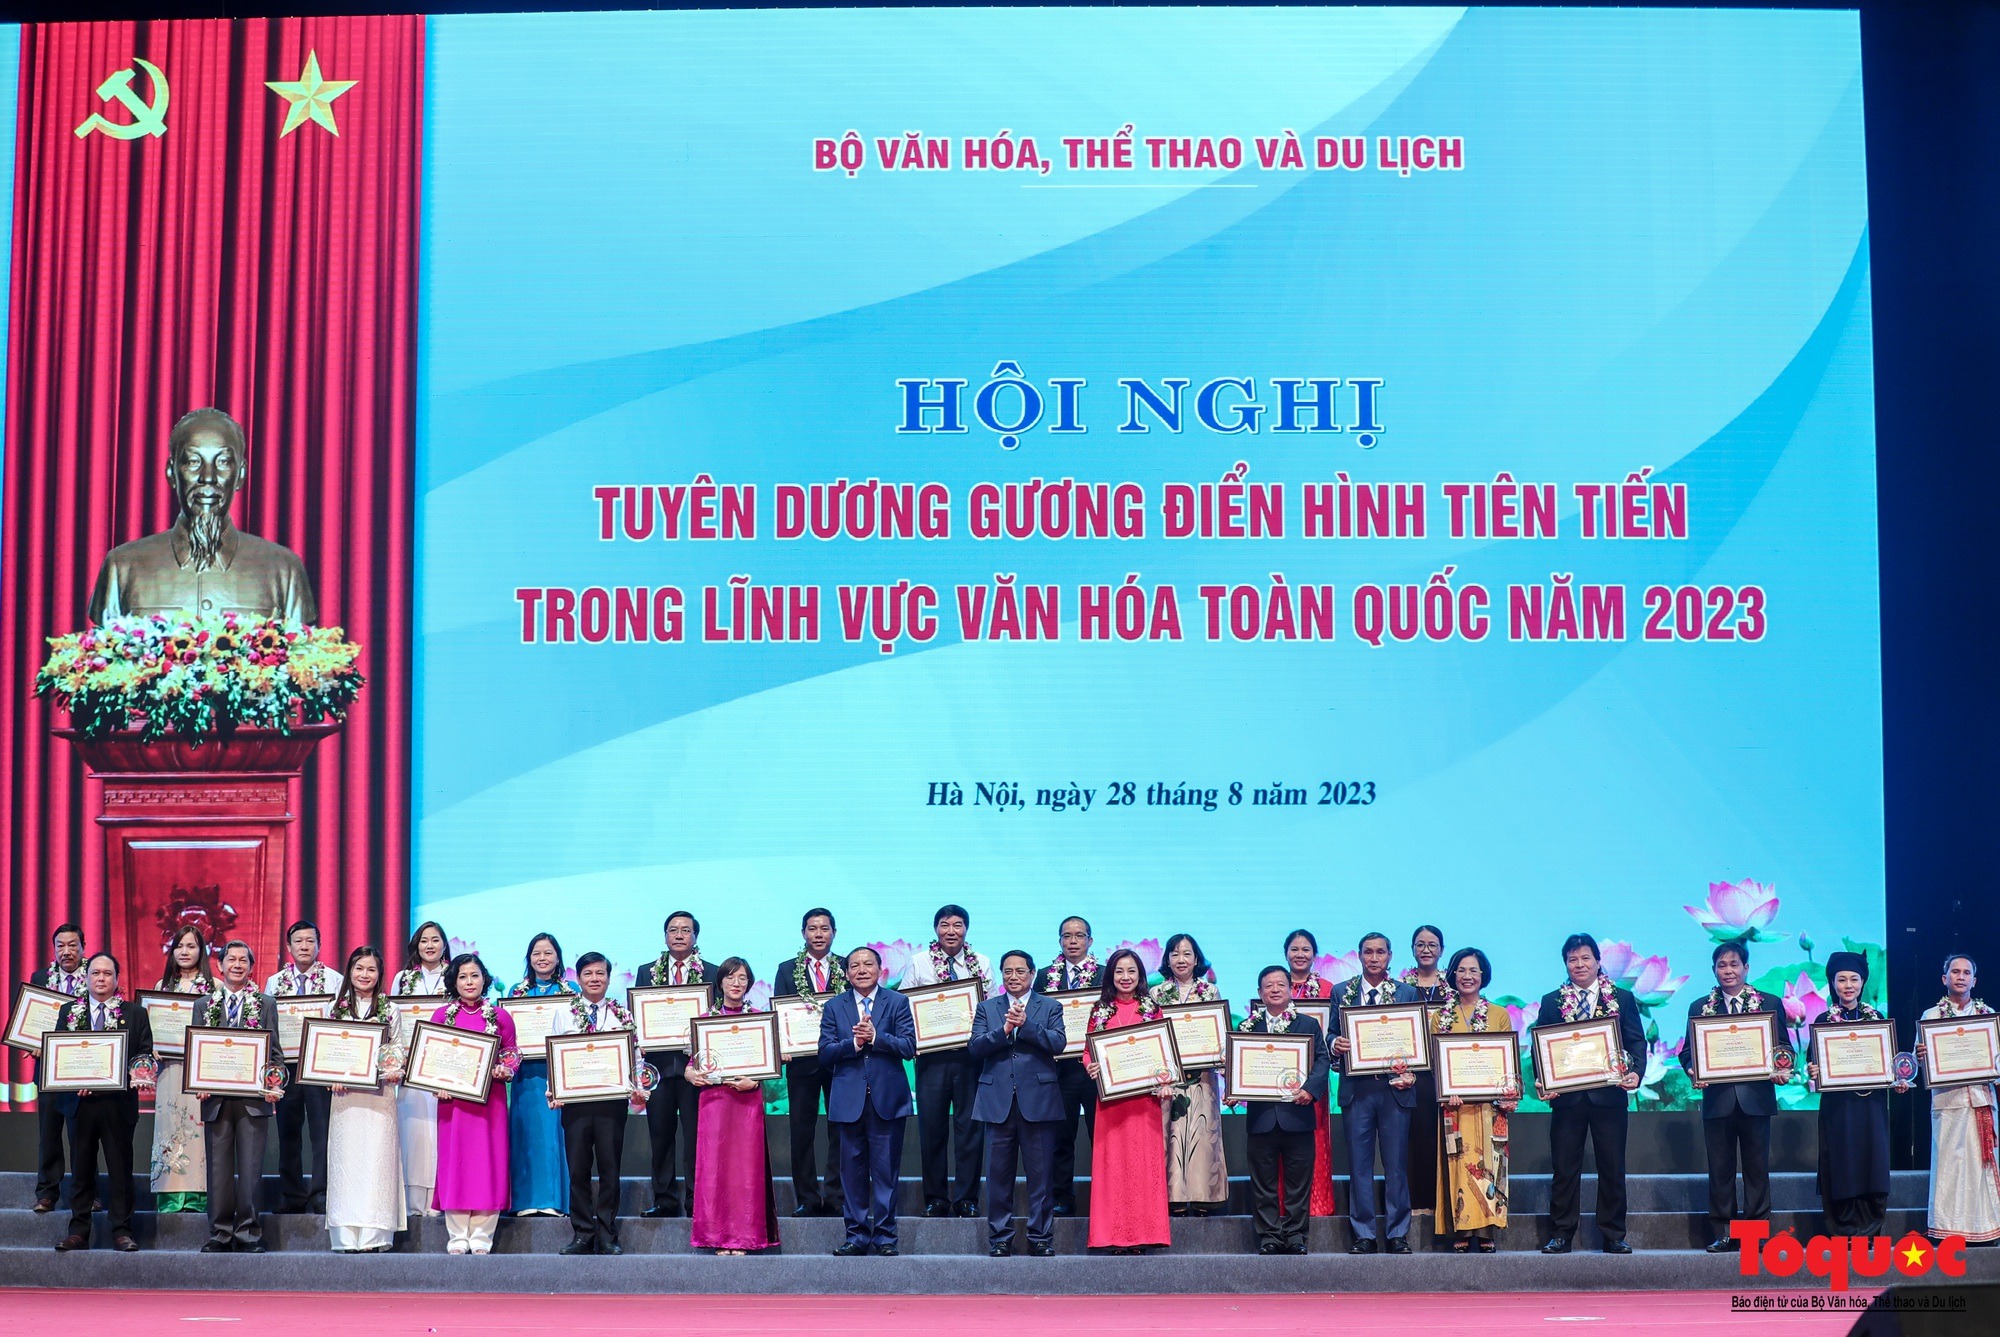 Tổng Bí thư Nguyễn Phú Trọng kỳ vọng phát huy mạnh mẽ vai trò của văn hóa trong sự nghiệp xây dựng và bảo vệ Tổ quốc - Ảnh 6.